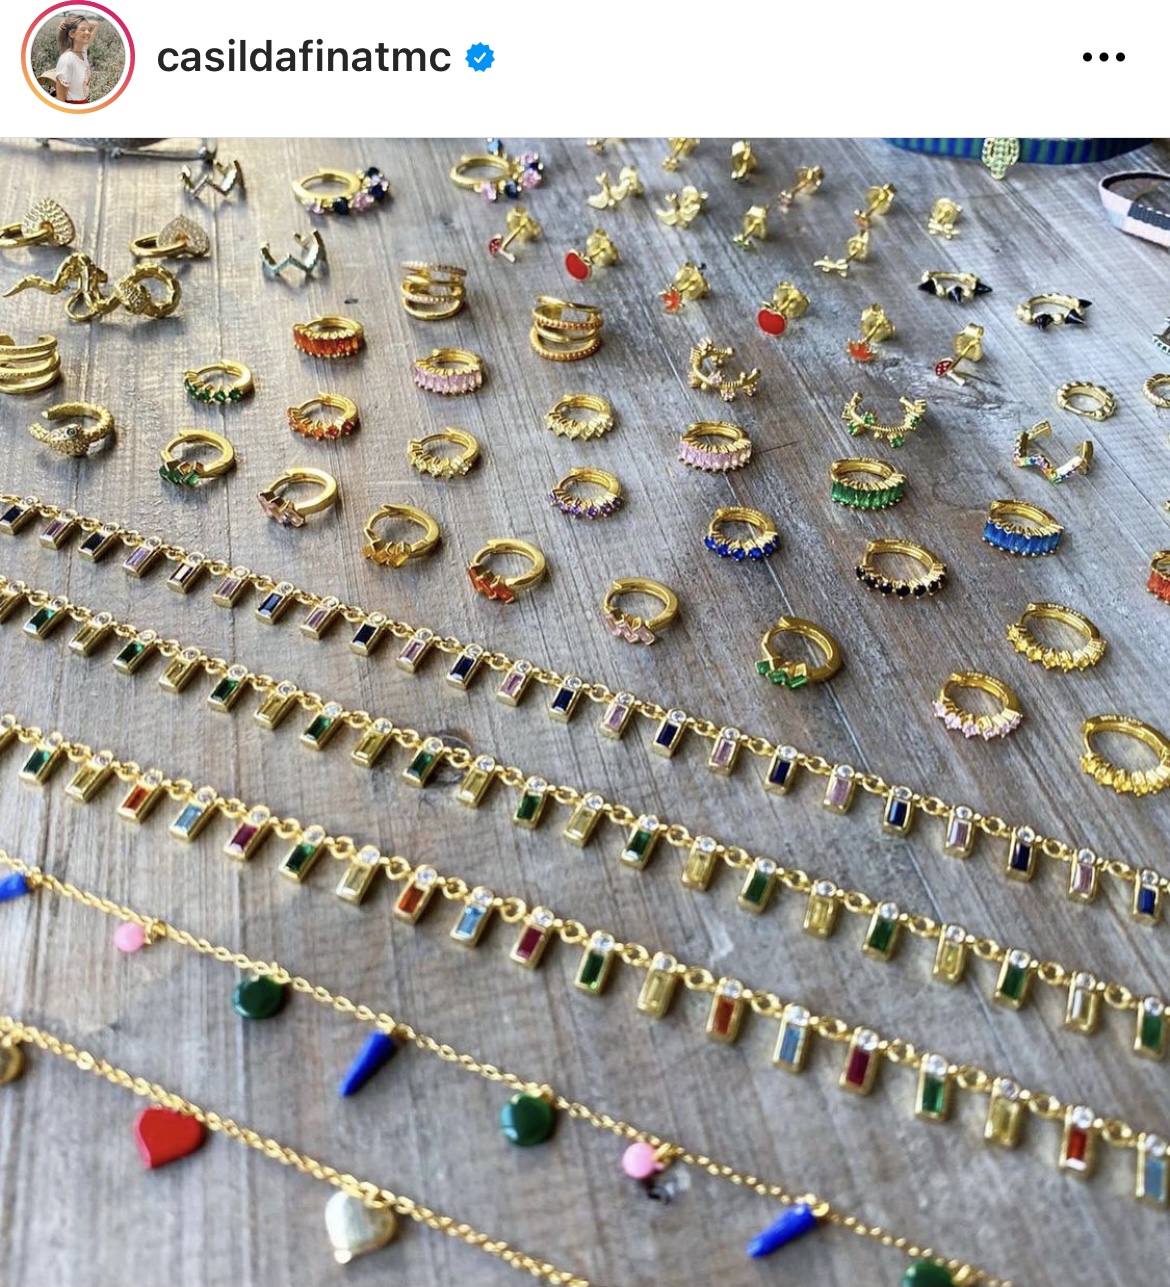 Casilda Finat, las joyas que arrasan en Instagram, inaugura mañana primera tienda Zaragoza - Zaragoza